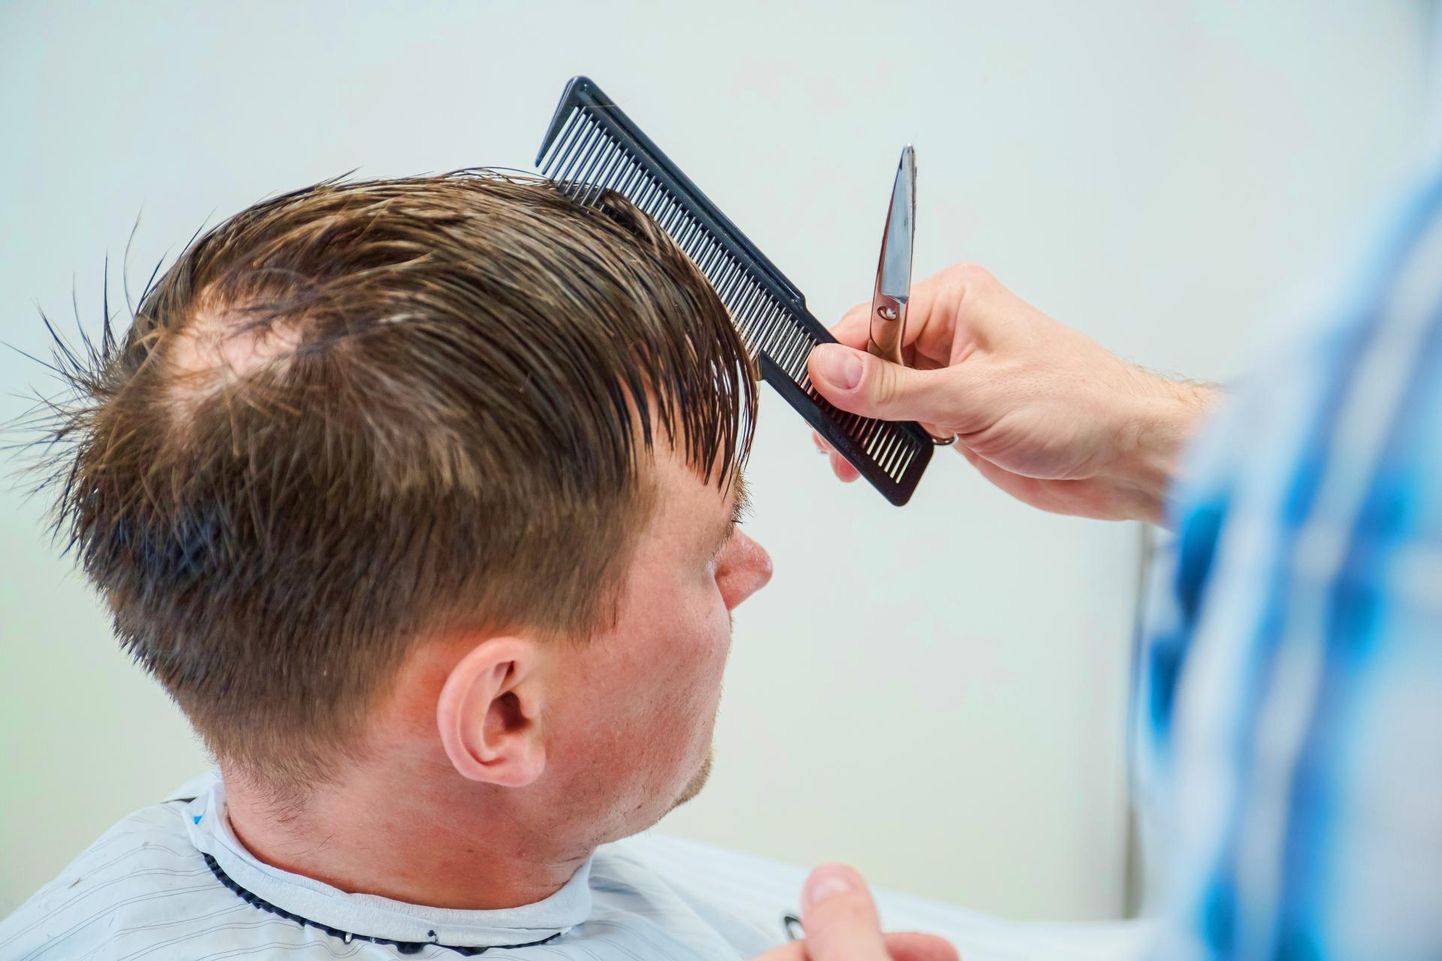 Osa juuksuriärisid on suletud, osa jätkab väiksema töömahuga. Pilt on tehtud ajal, kui juuksuri ­juures käimine oli elu normaalne osa.